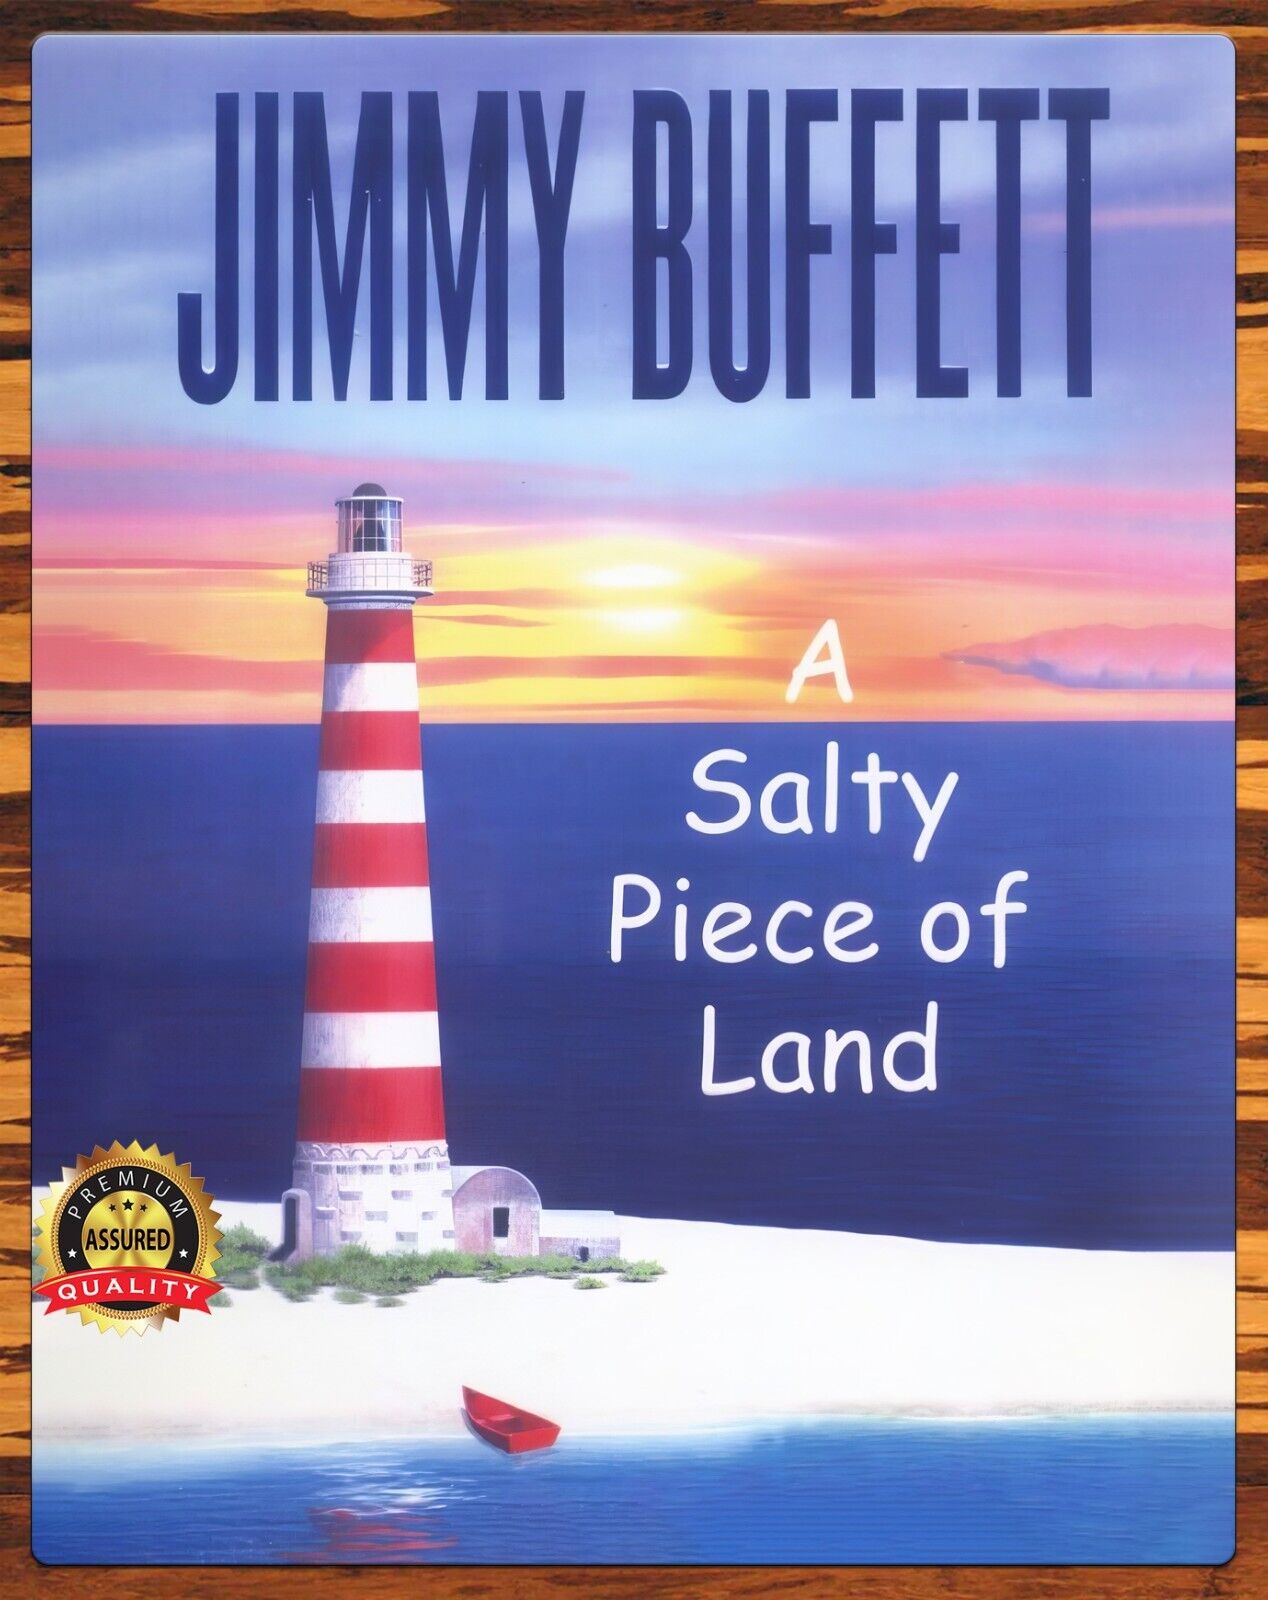 Jimmy Buffett - A Salty Piece Of Land - Tour 2005 - Rare - Metal Sign 11 x 14